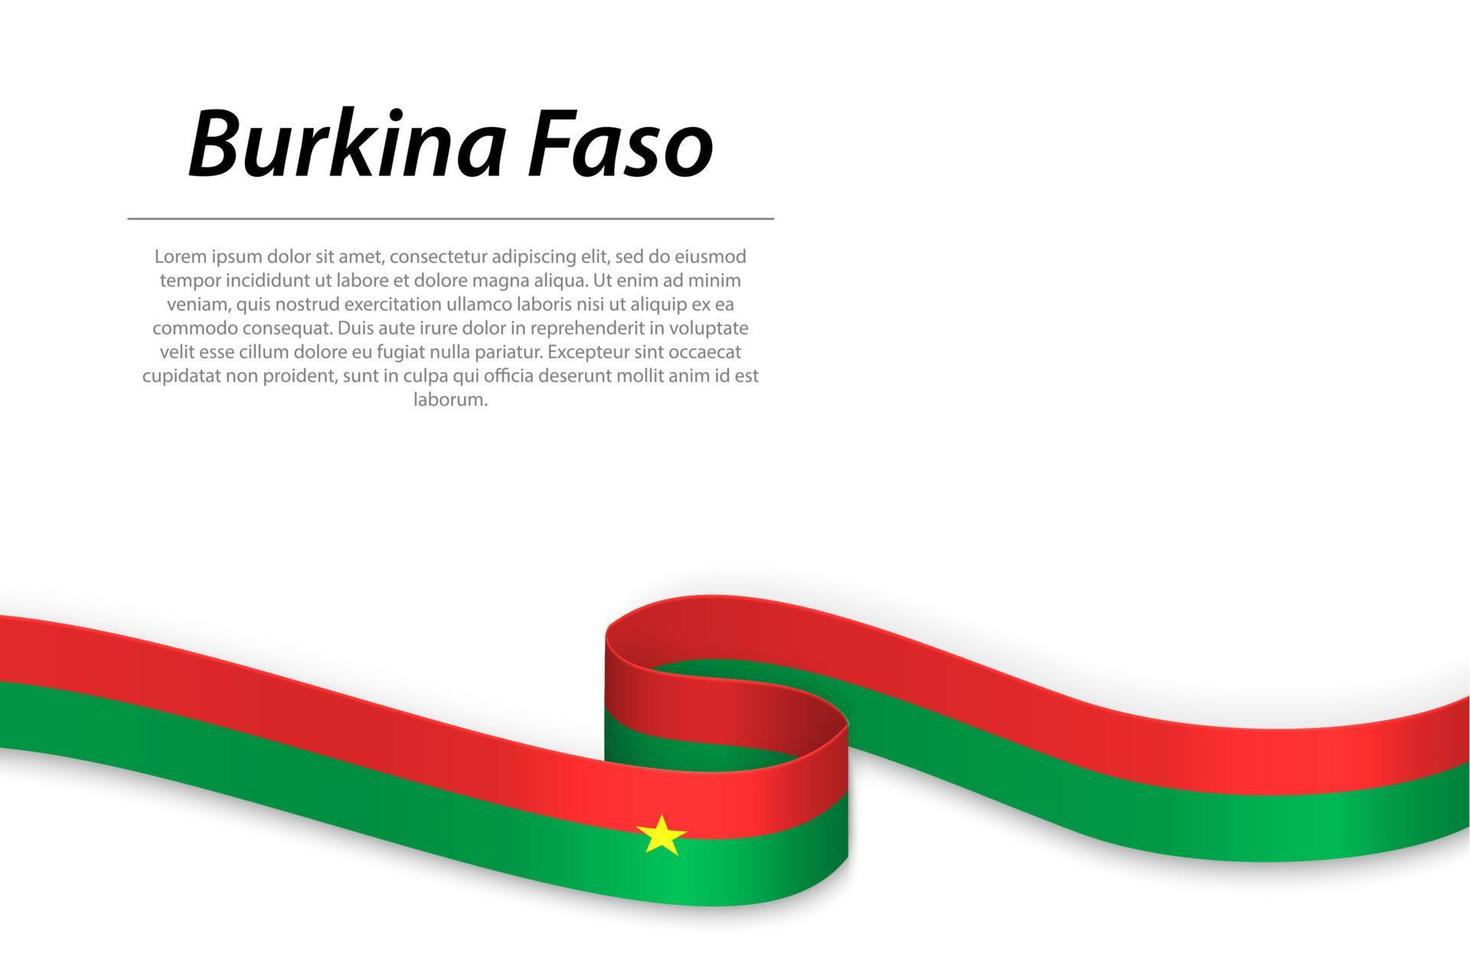 schwenkendes band oder banner mit flagge von burkina faso vektor